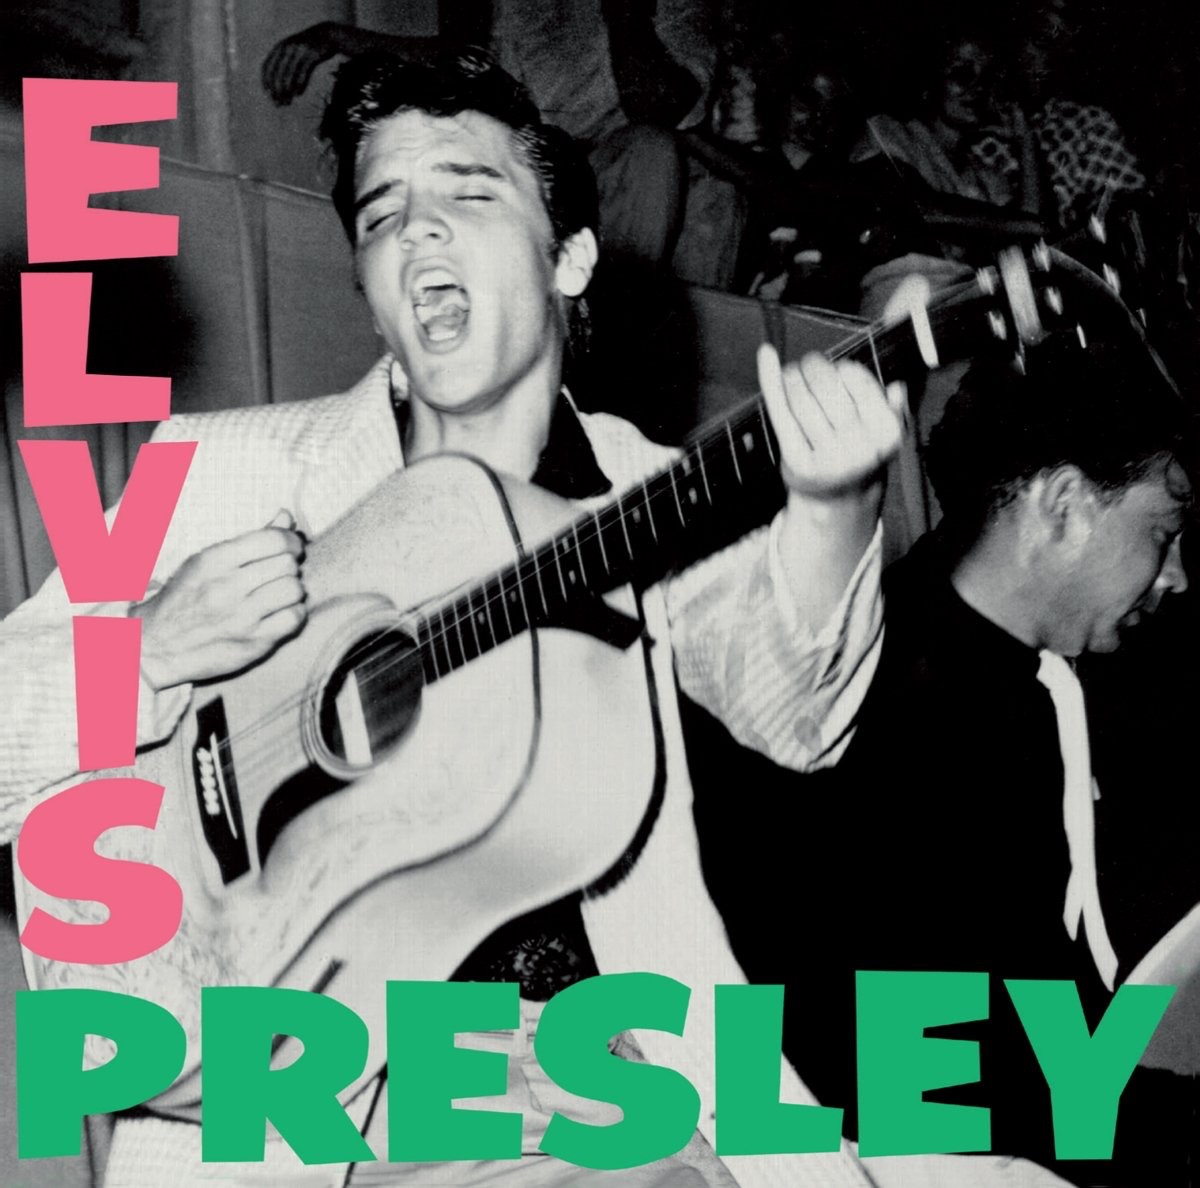 "Elvis Presley" by Elvis Presley album cover